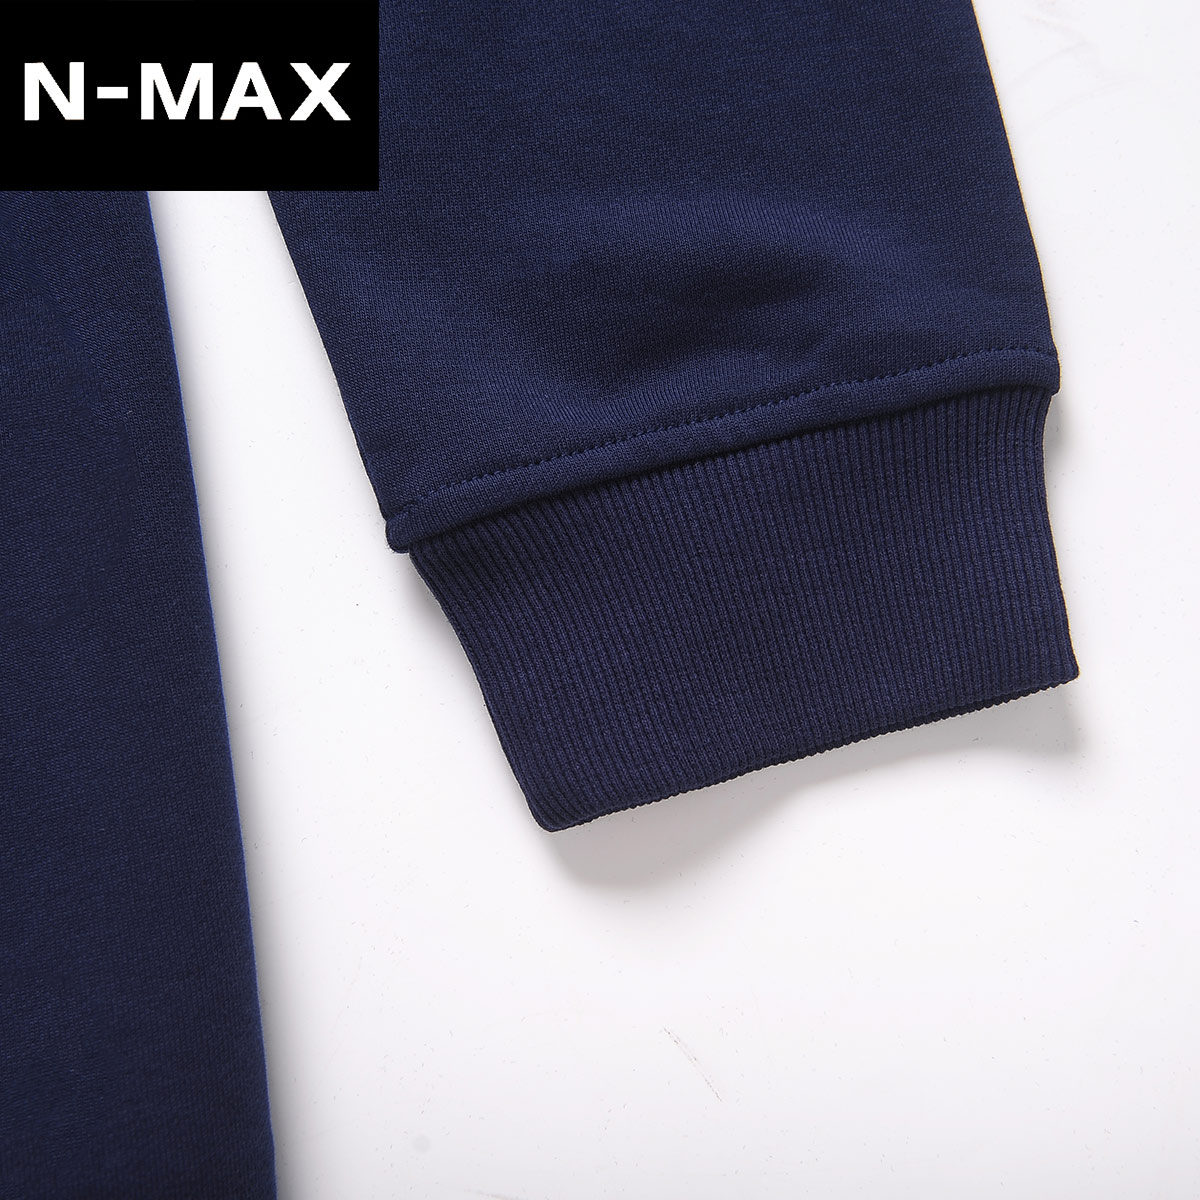 NMAX大码男装潮牌 春装新款加肥加大宽松长袖T恤潮流上衣卫衣产品展示图2